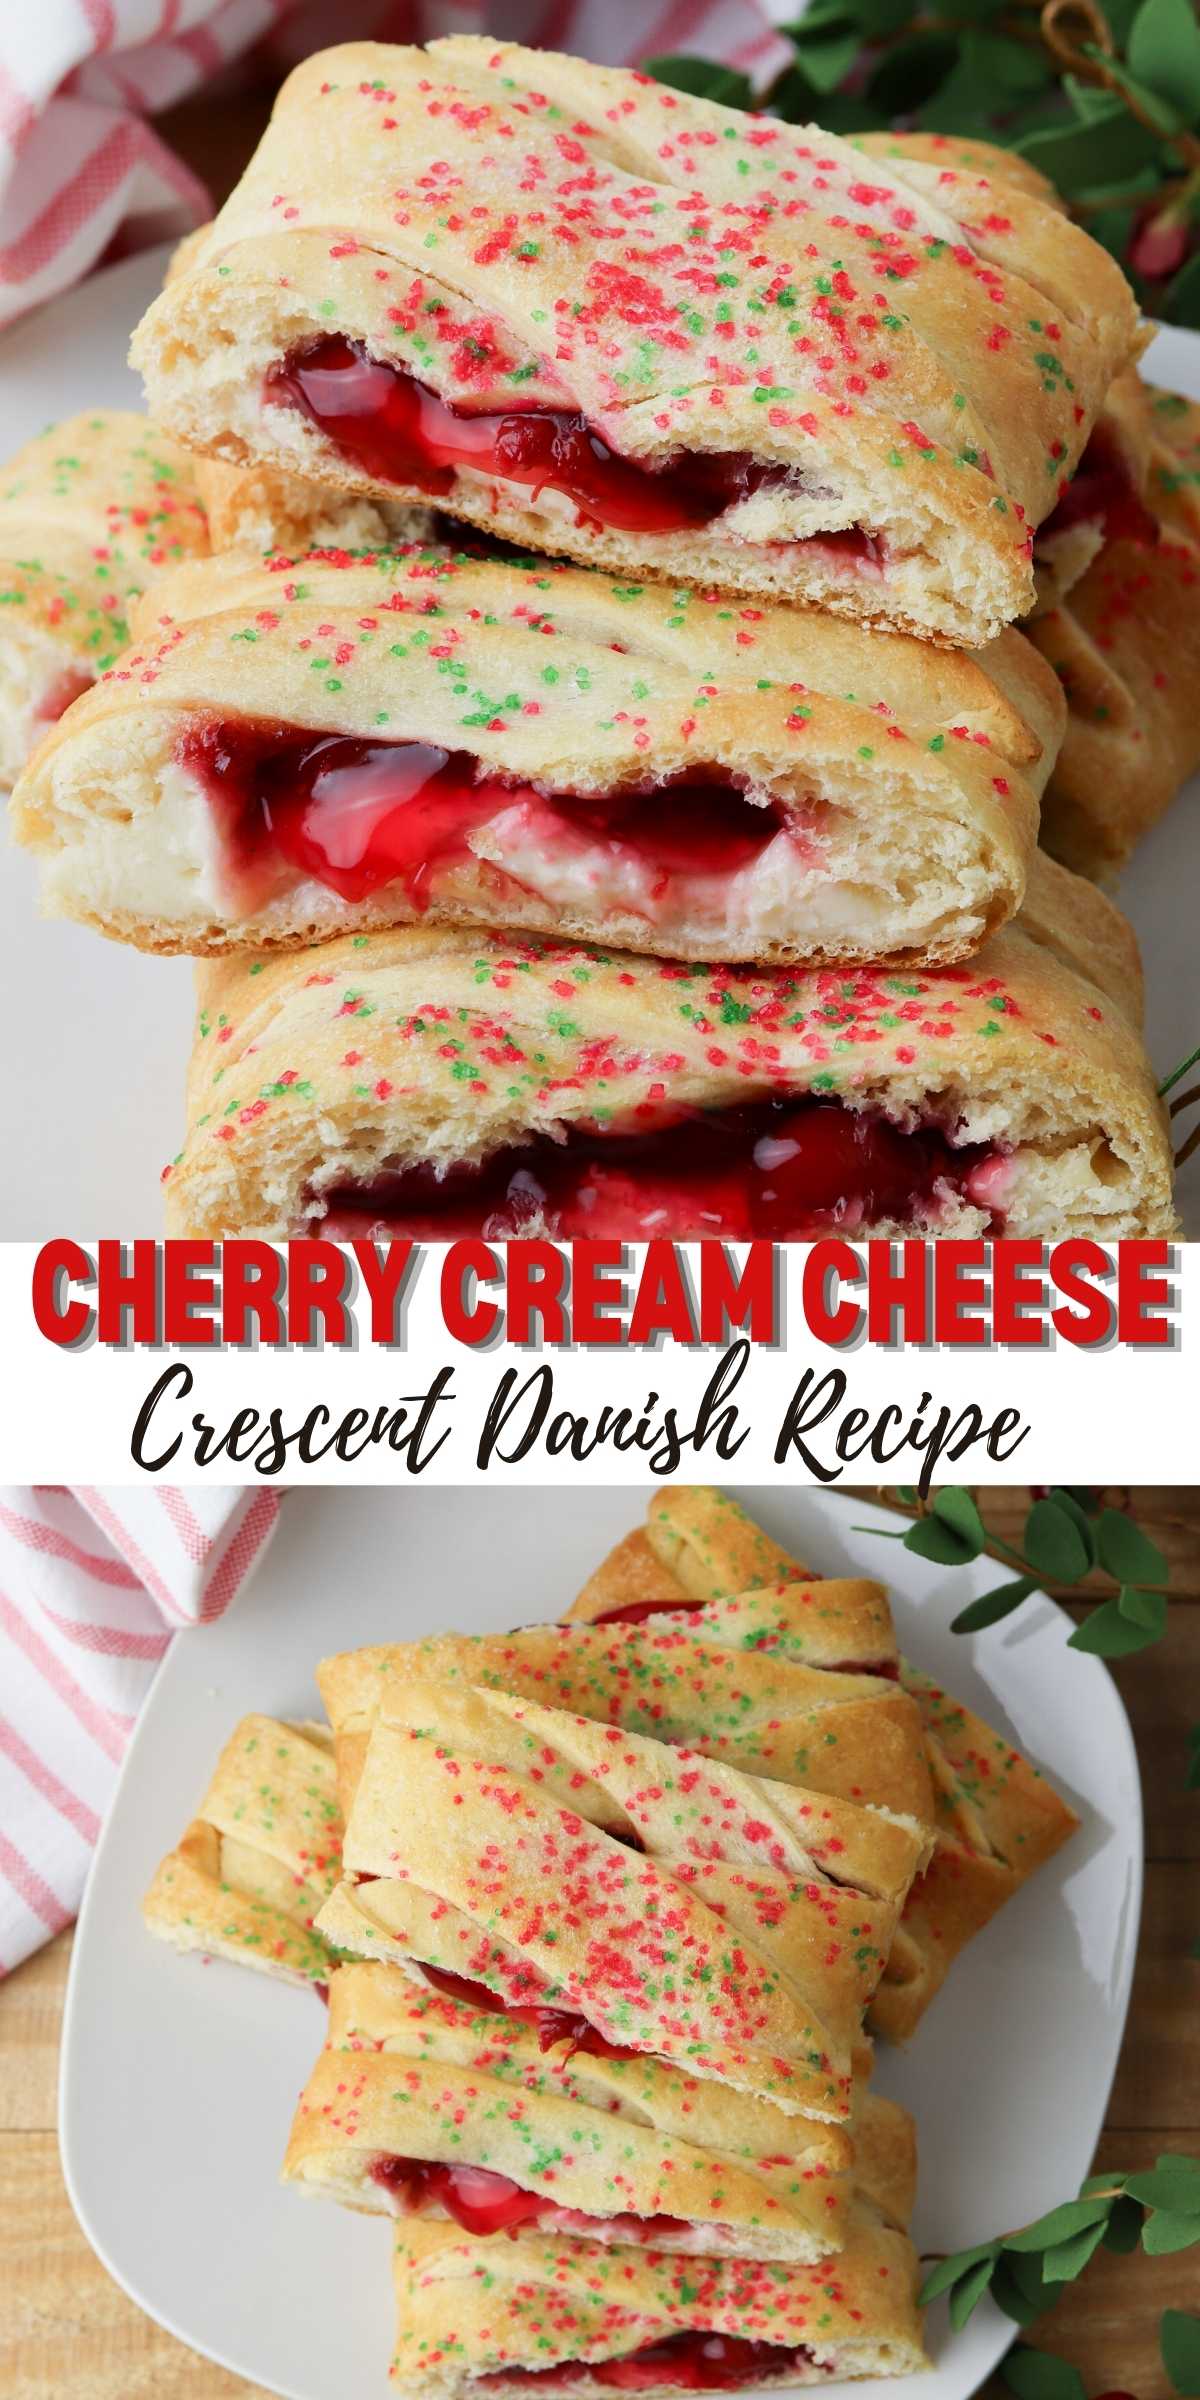 Cherry Cream Cheese Crescent Danish